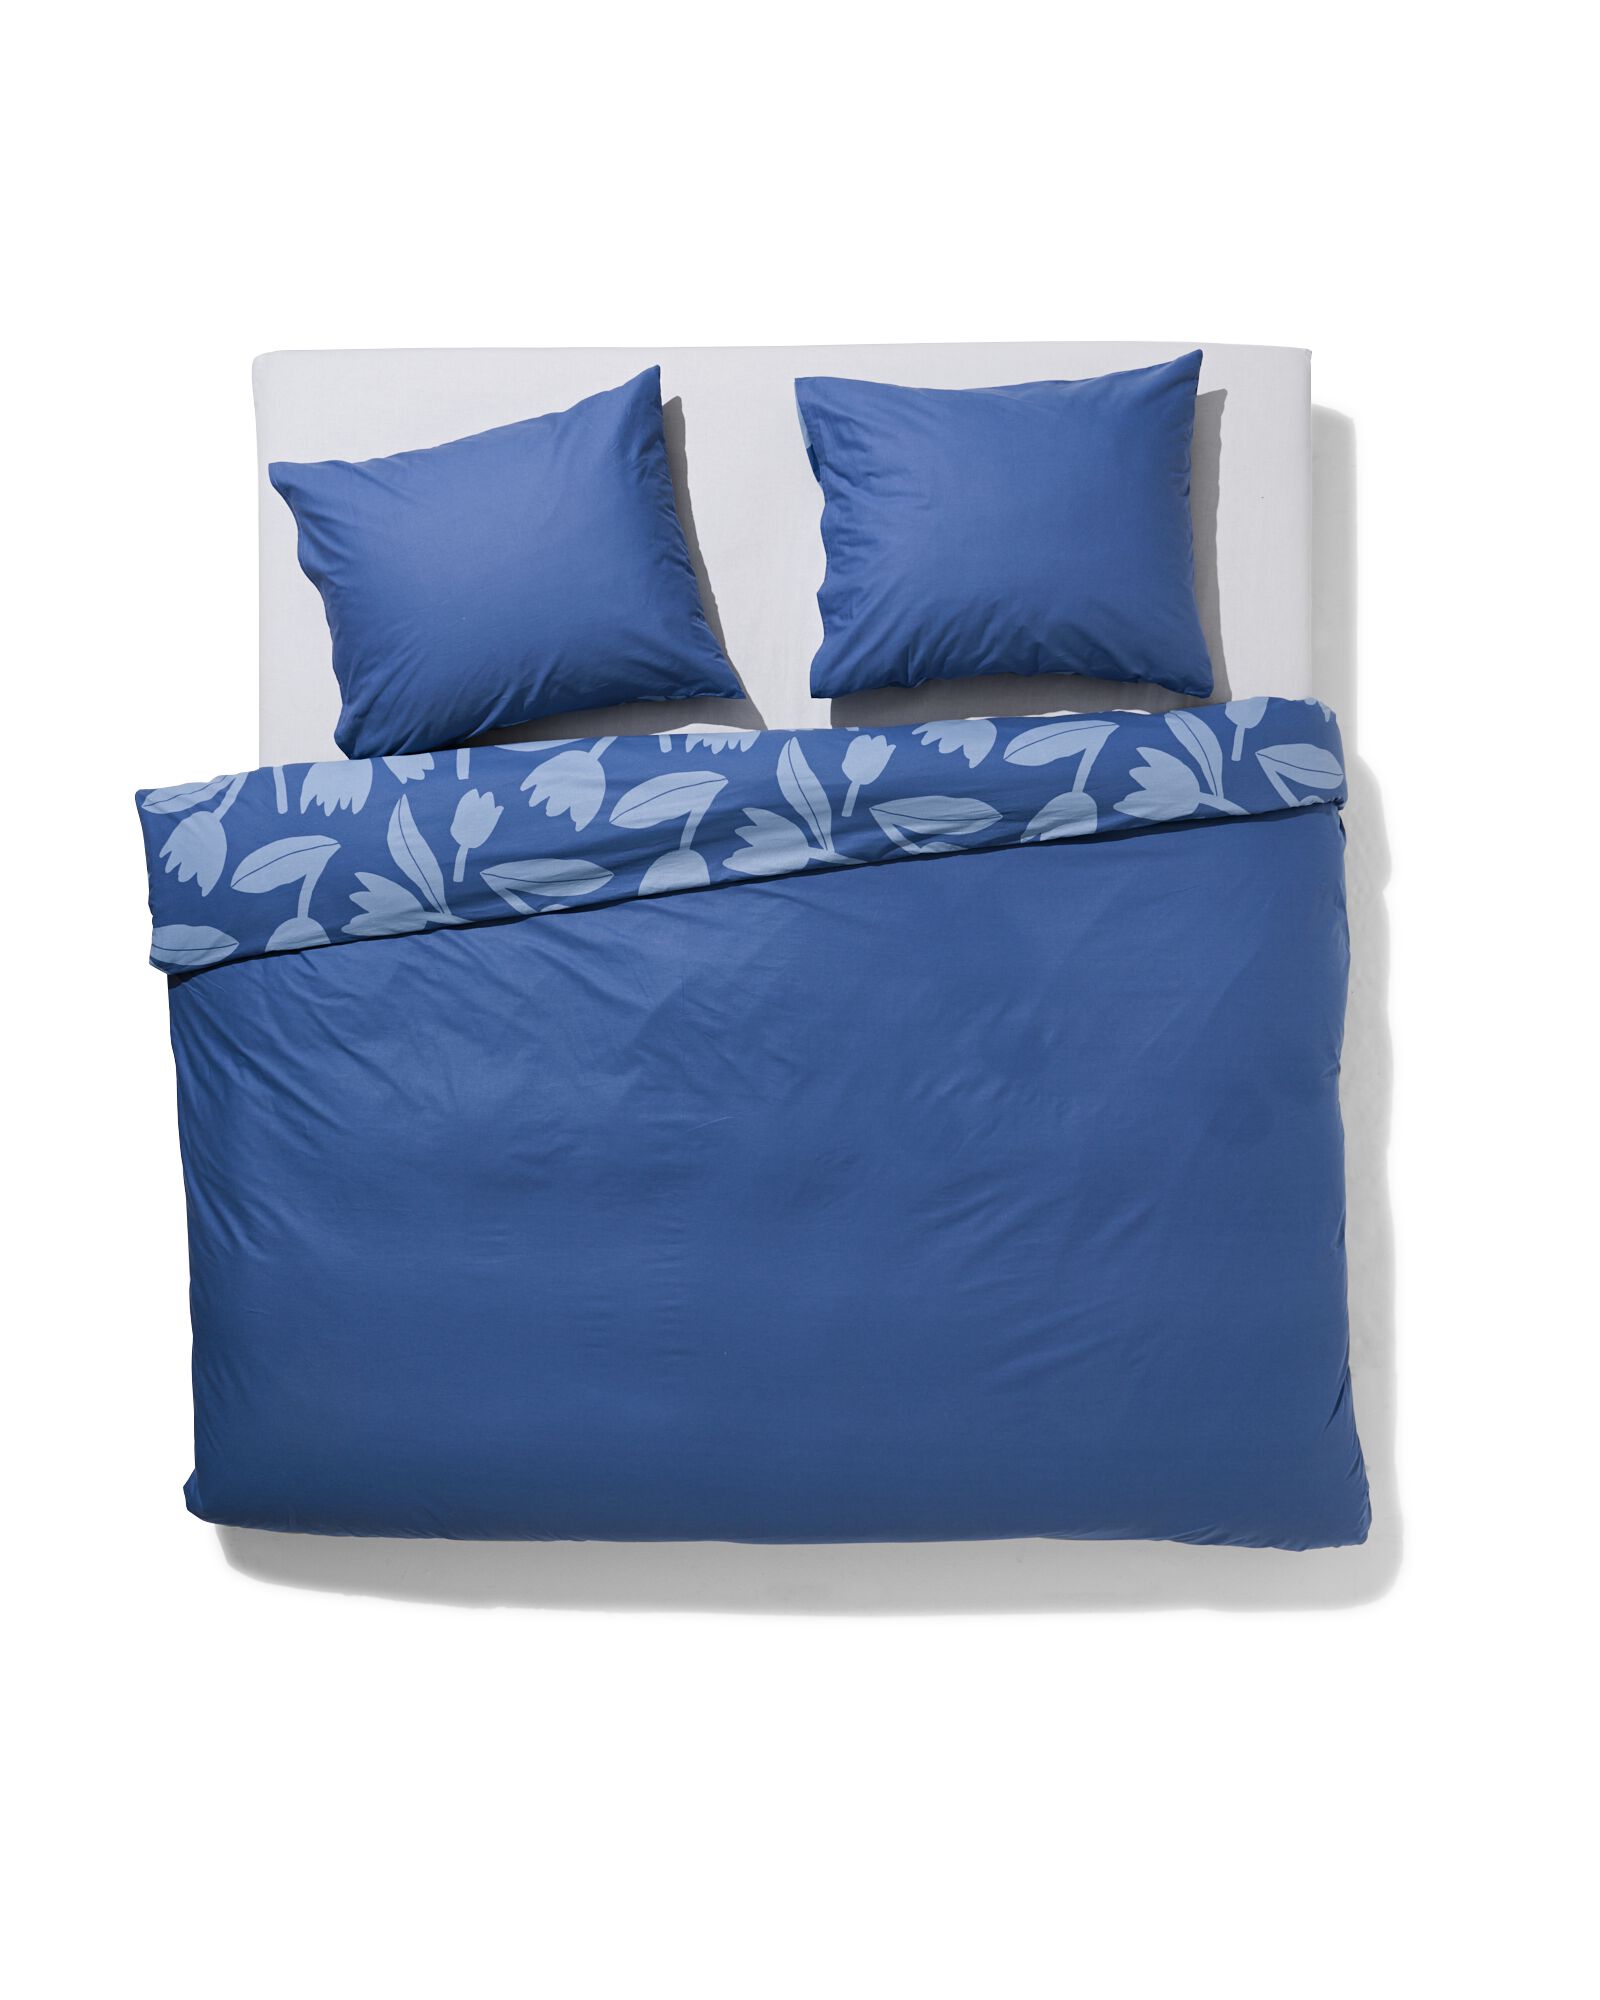 Bettwäsche, Soft Cotton, 200 x 220 cm, Tulpen, blau - 5730186 - HEMA